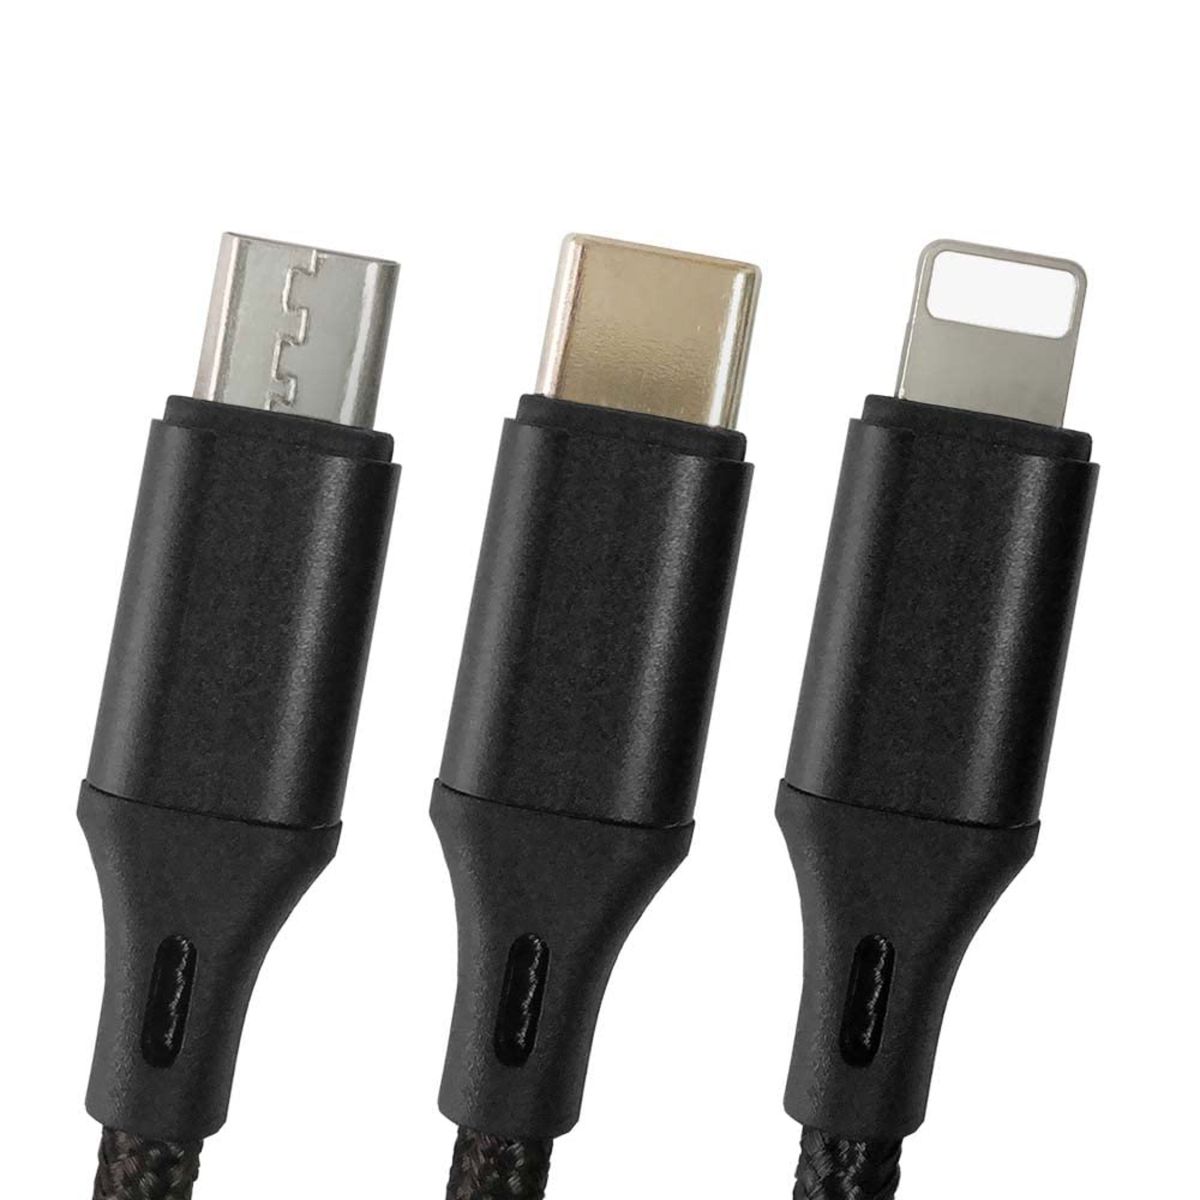 3台同時に充電 TypeC  3in1 超便利 USBケーブル USBケーブル 充電ケーブル